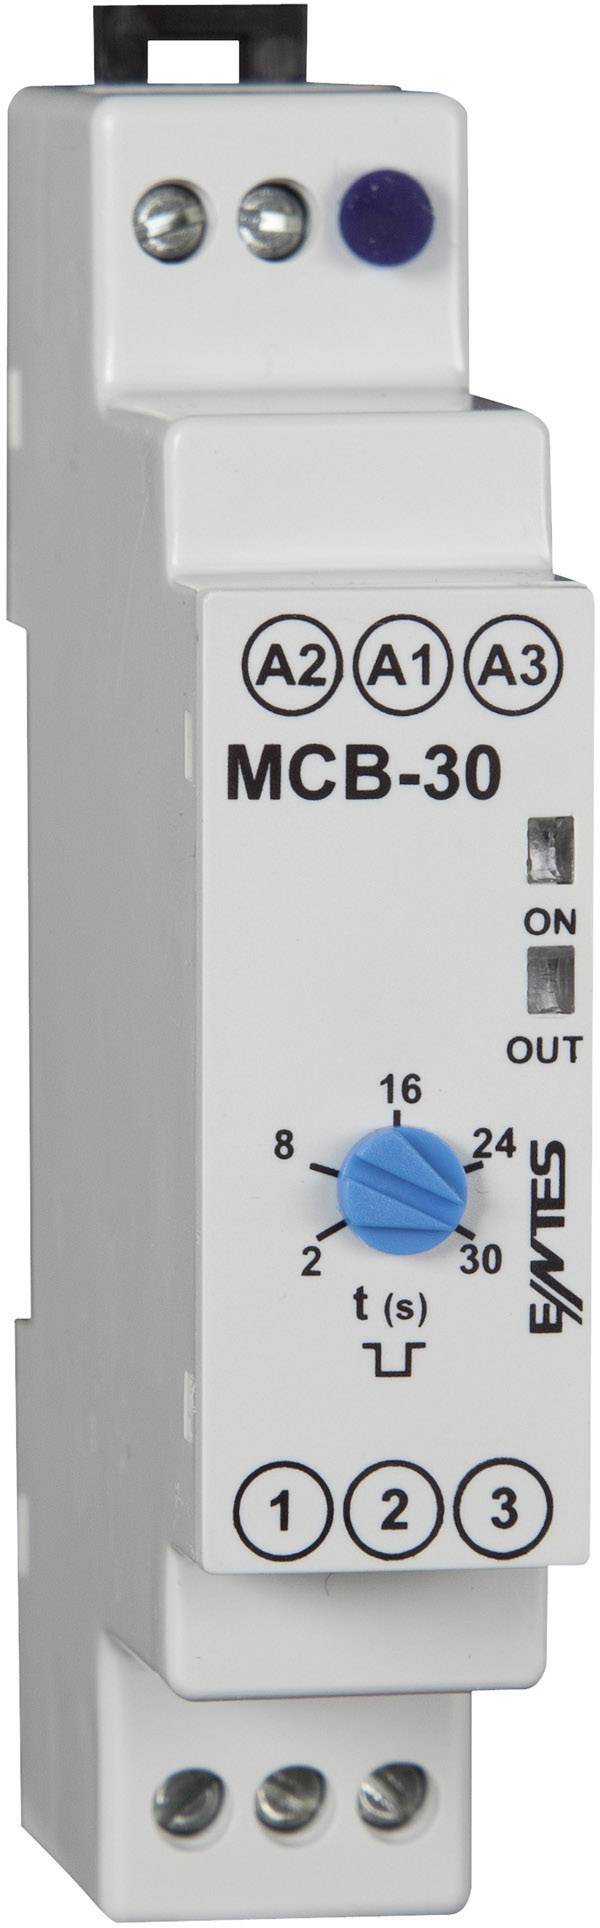 ENTES MCB-30 Zeitrelais Monofunktional 24 V/DC, 24 V/AC, 230 V/AC 1 St.